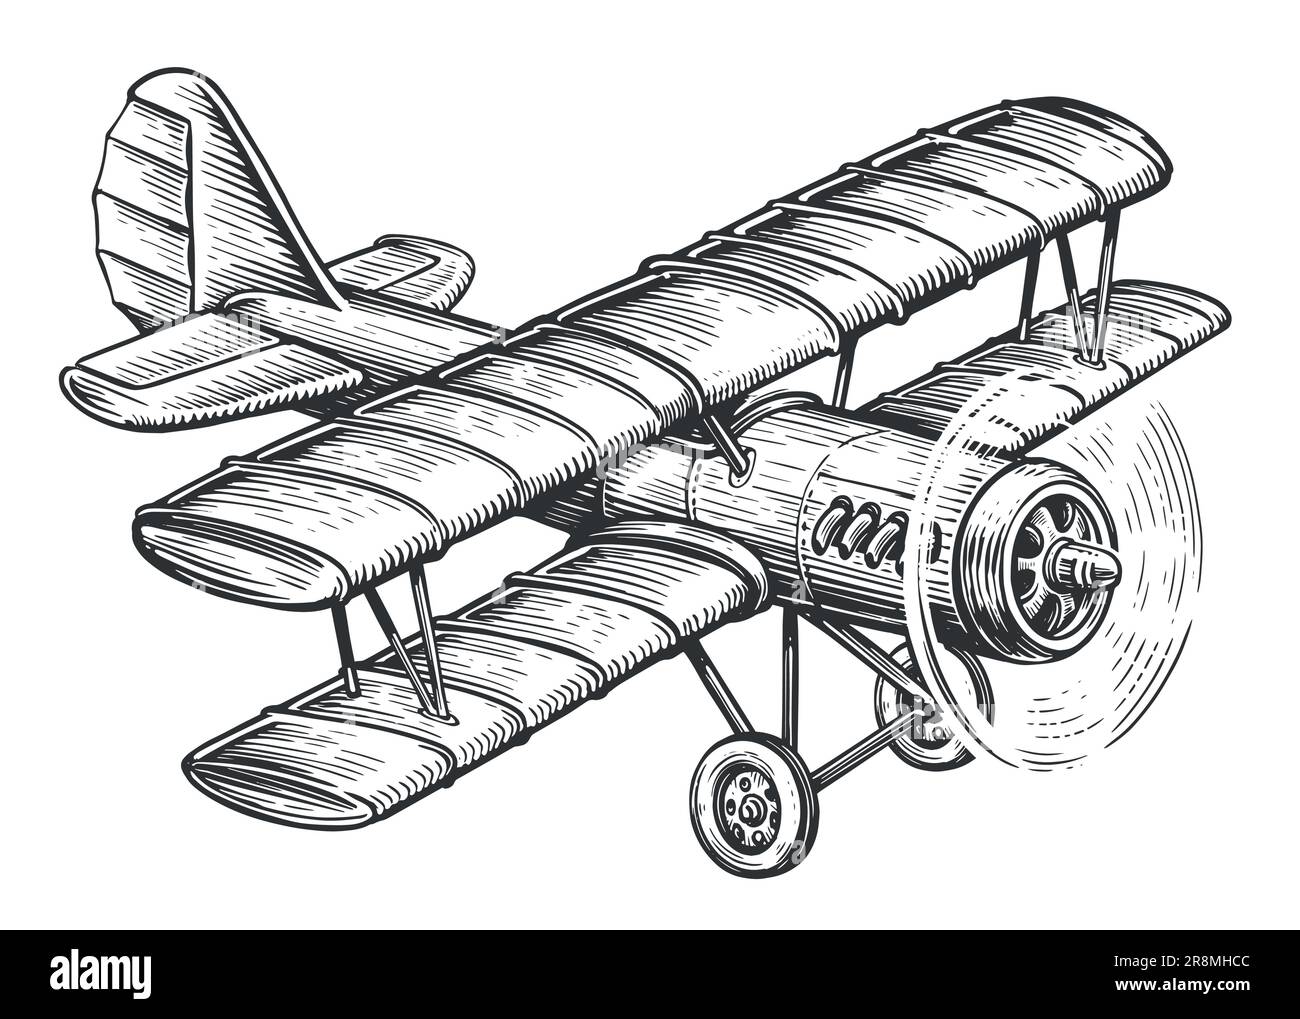 Avion rétro biplan avec moteur à pistons. Illustration vectorielle d'esquisse de transport vintage Illustration de Vecteur